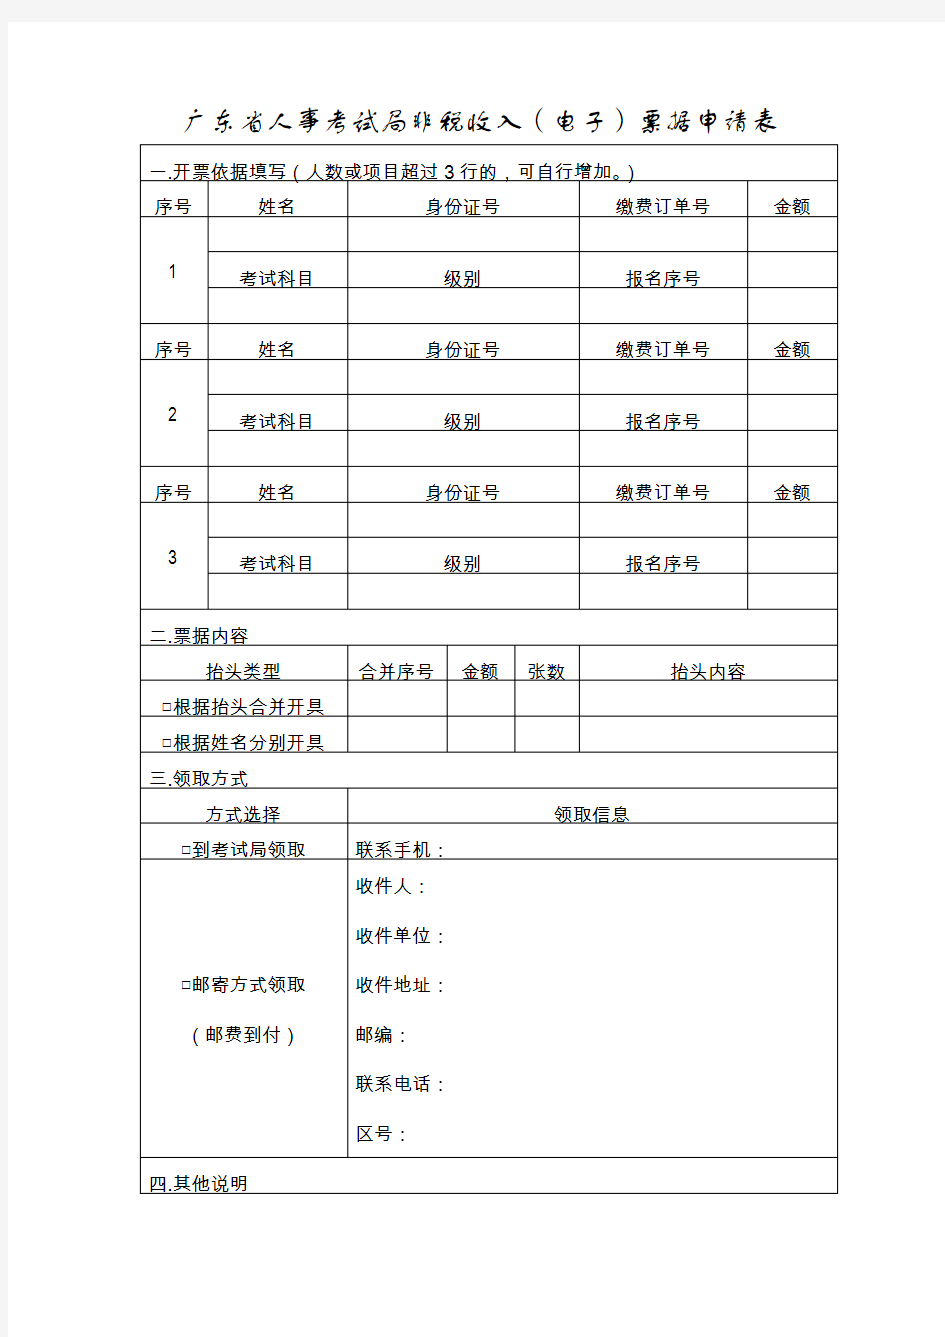 广东人事考试局非税收入电子票据申请表